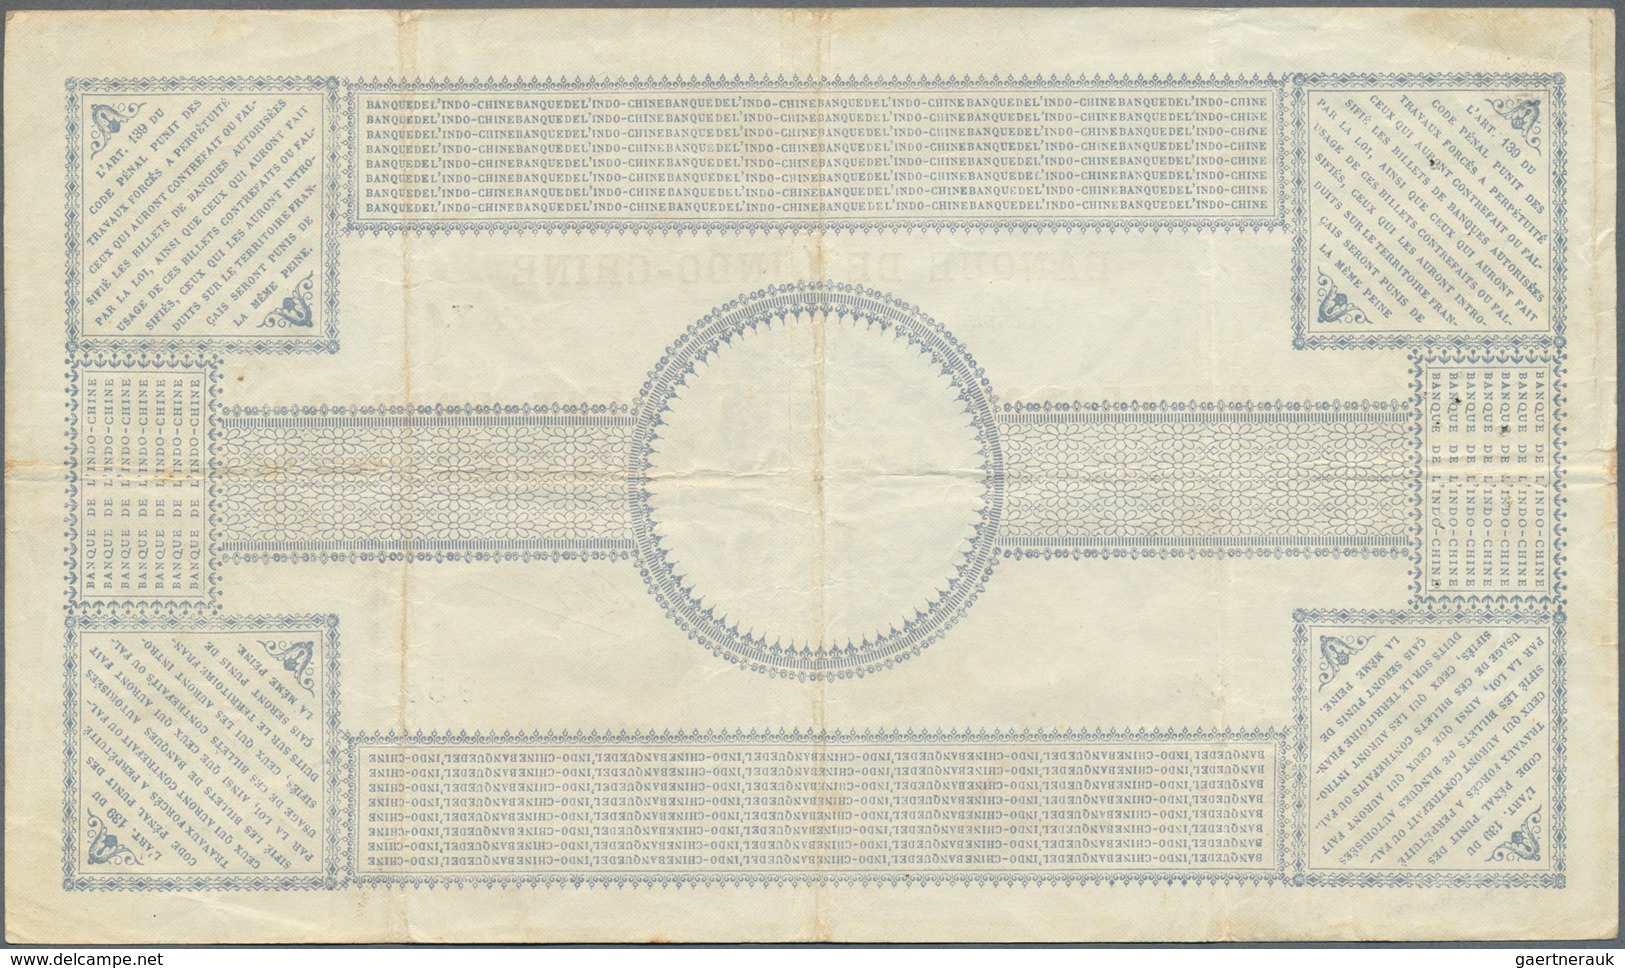 02084 New Caledonia / Neu Kaledonien: 100 Francs 1914 Noumea Banque De L'Indochine P. 17, Dated 11.03.1914 - Numea (Nueva Caledonia 1873-1985)